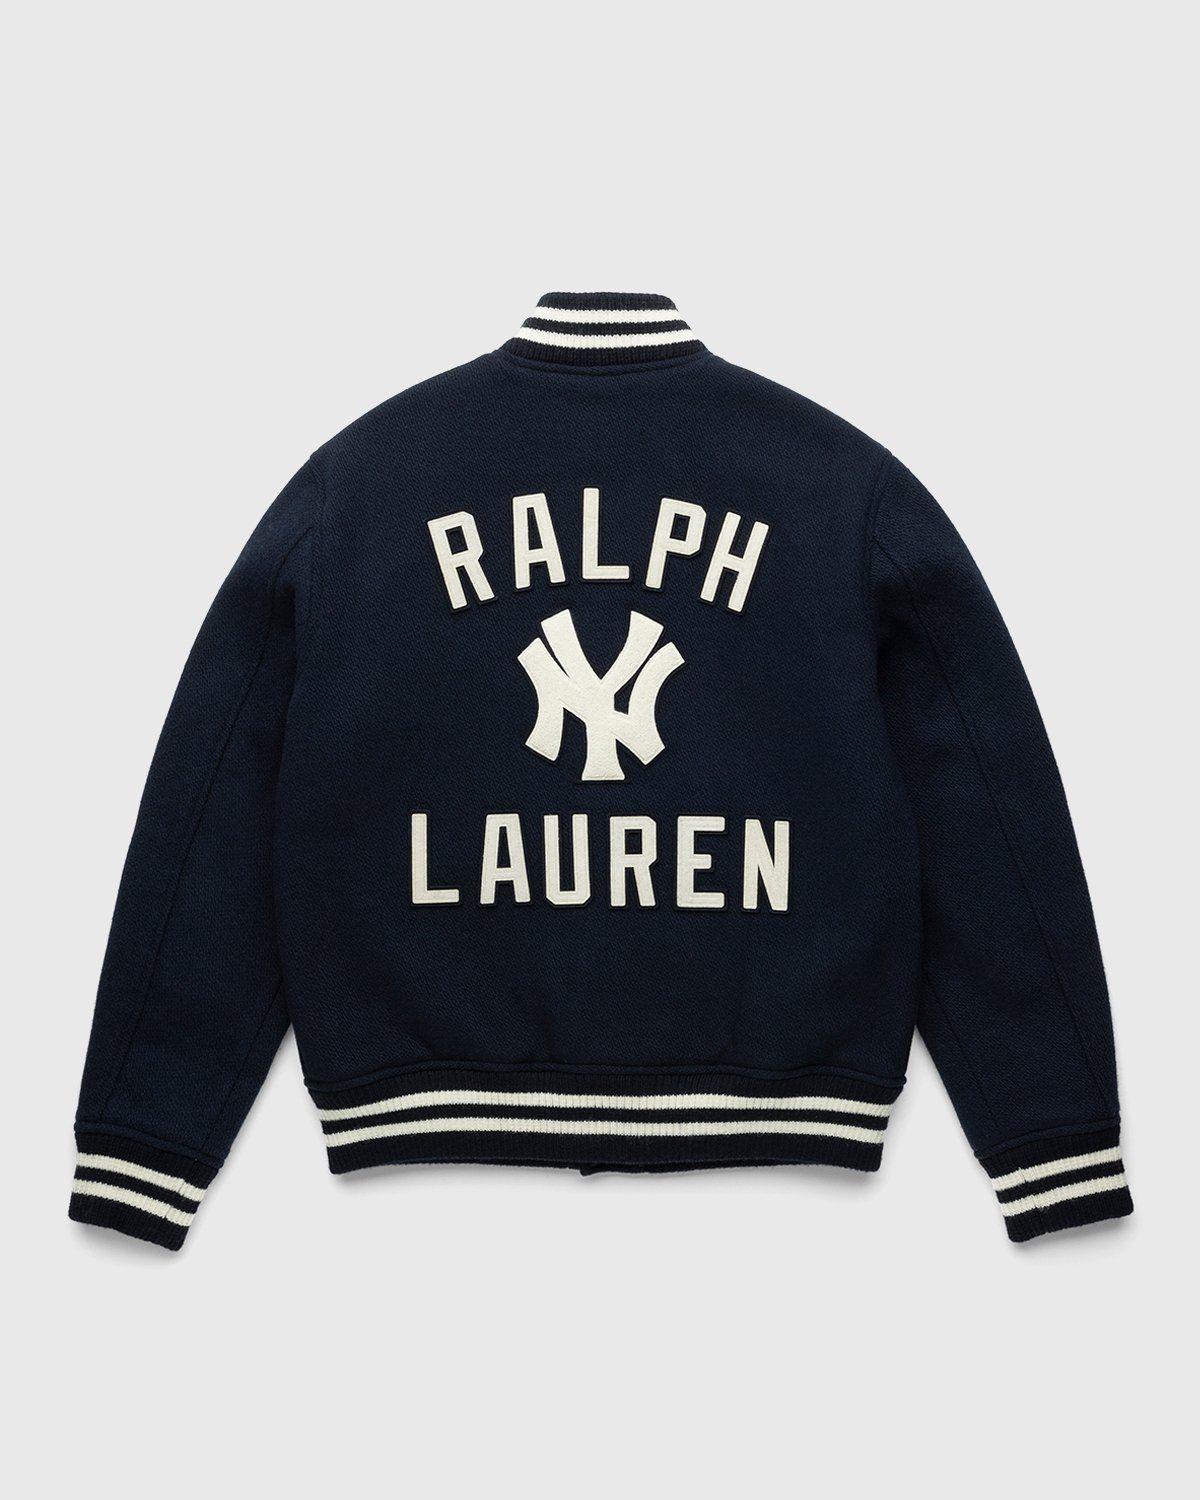 Actualizar 119+ imagen ralph lauren new york yankees jacket